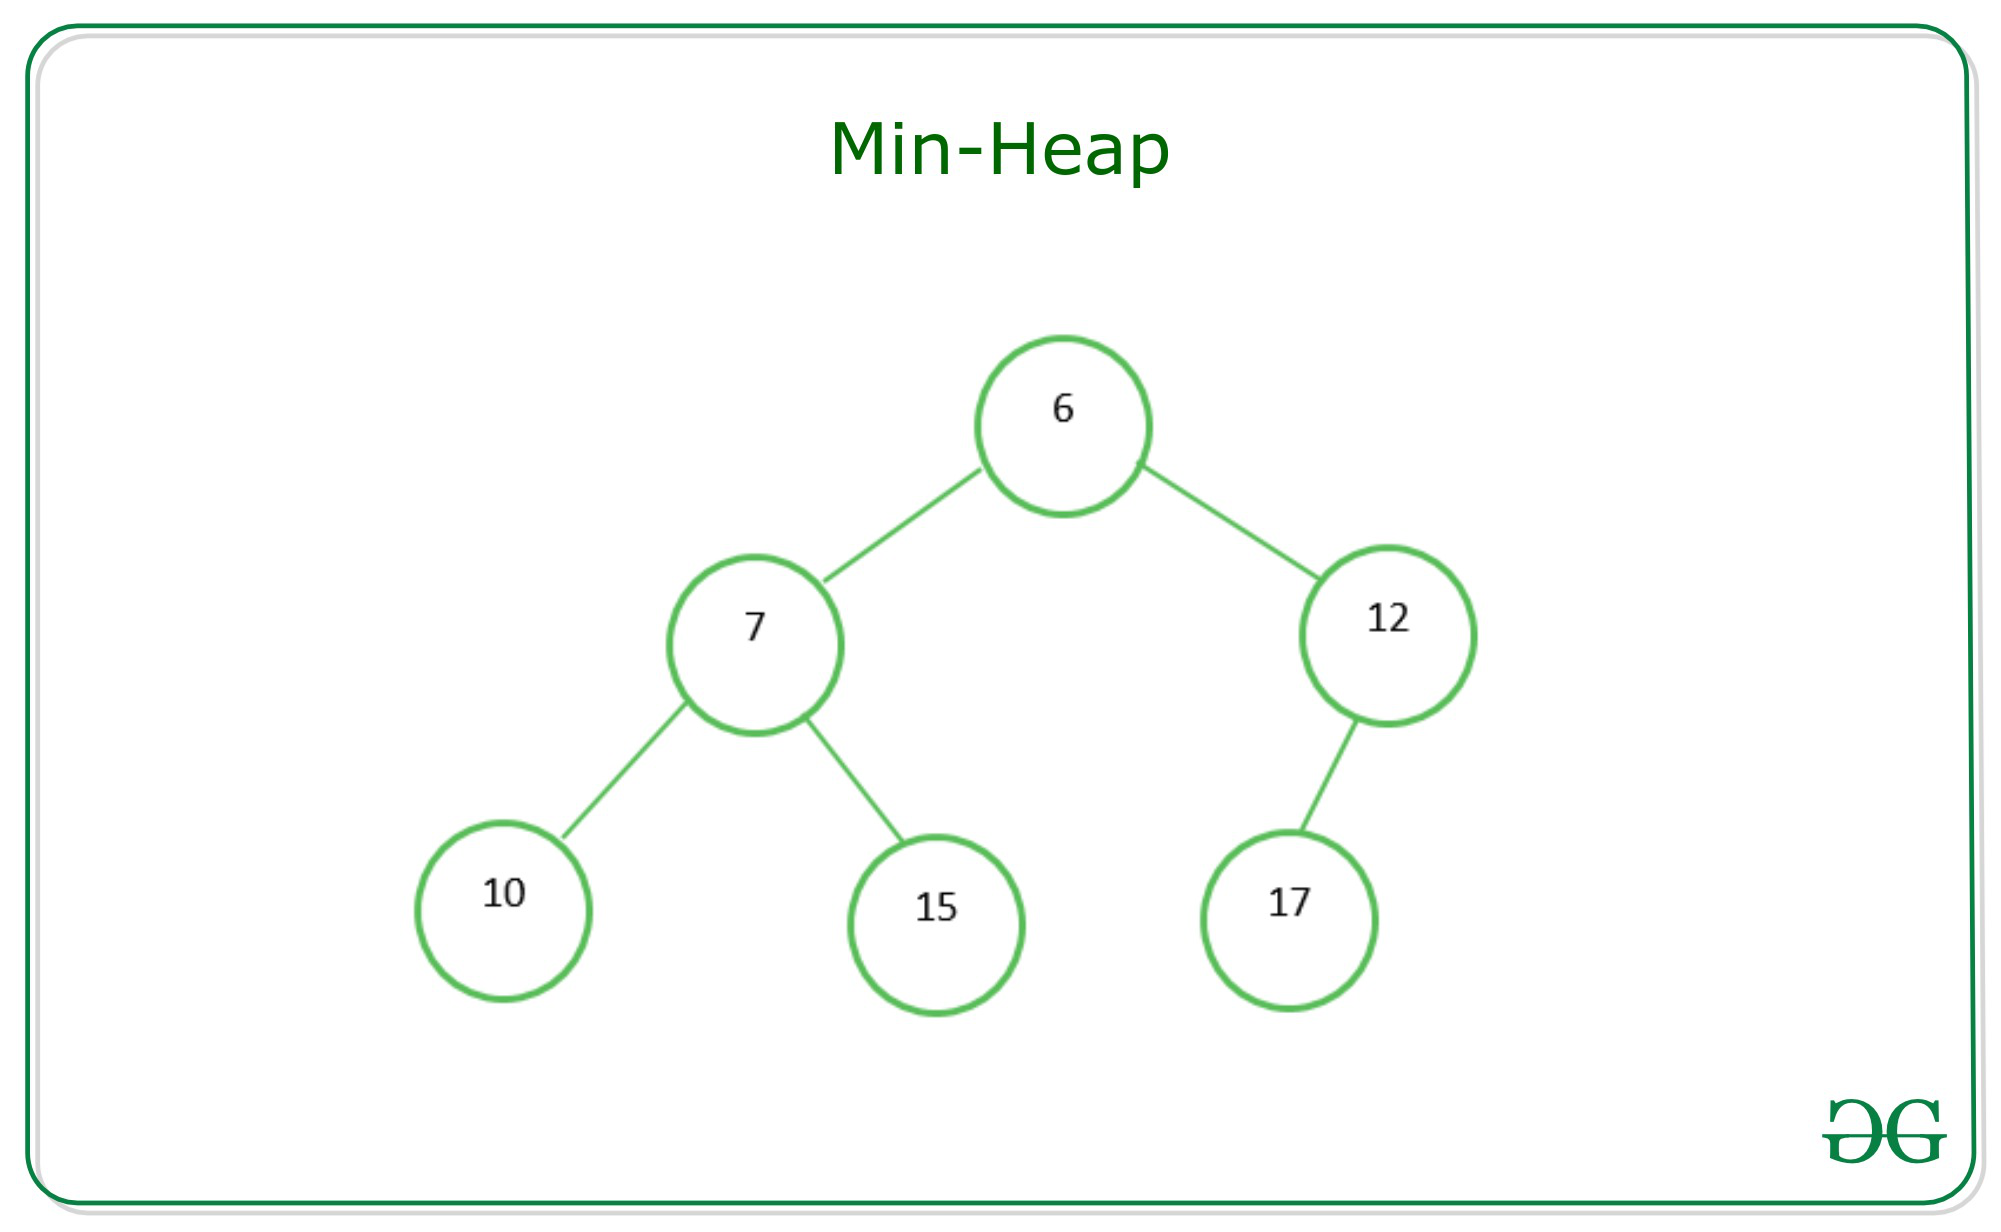 Min-Heap and Max-Heap Diagram